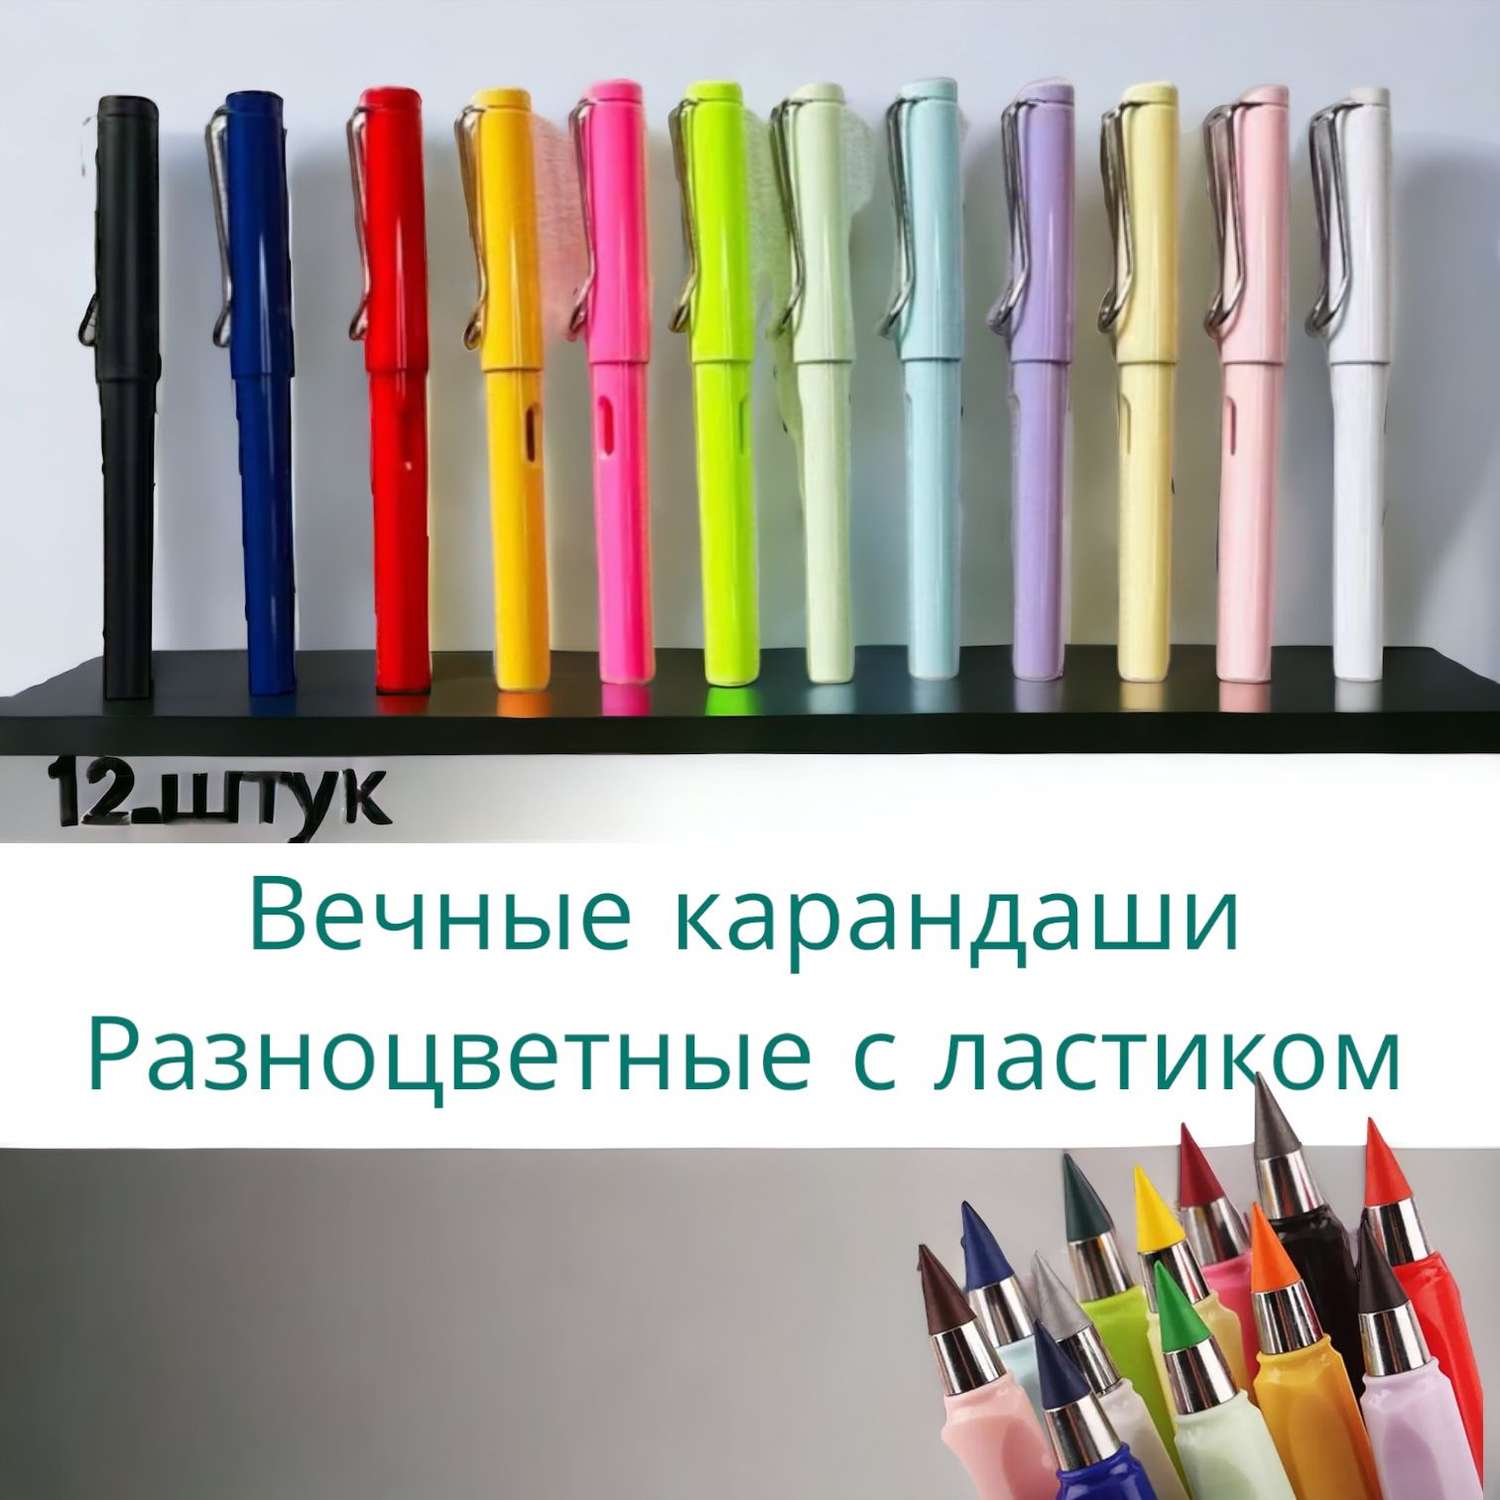 Вечный карандаш Panawealth International разноцветный с ластиком 12 штук - фото 2